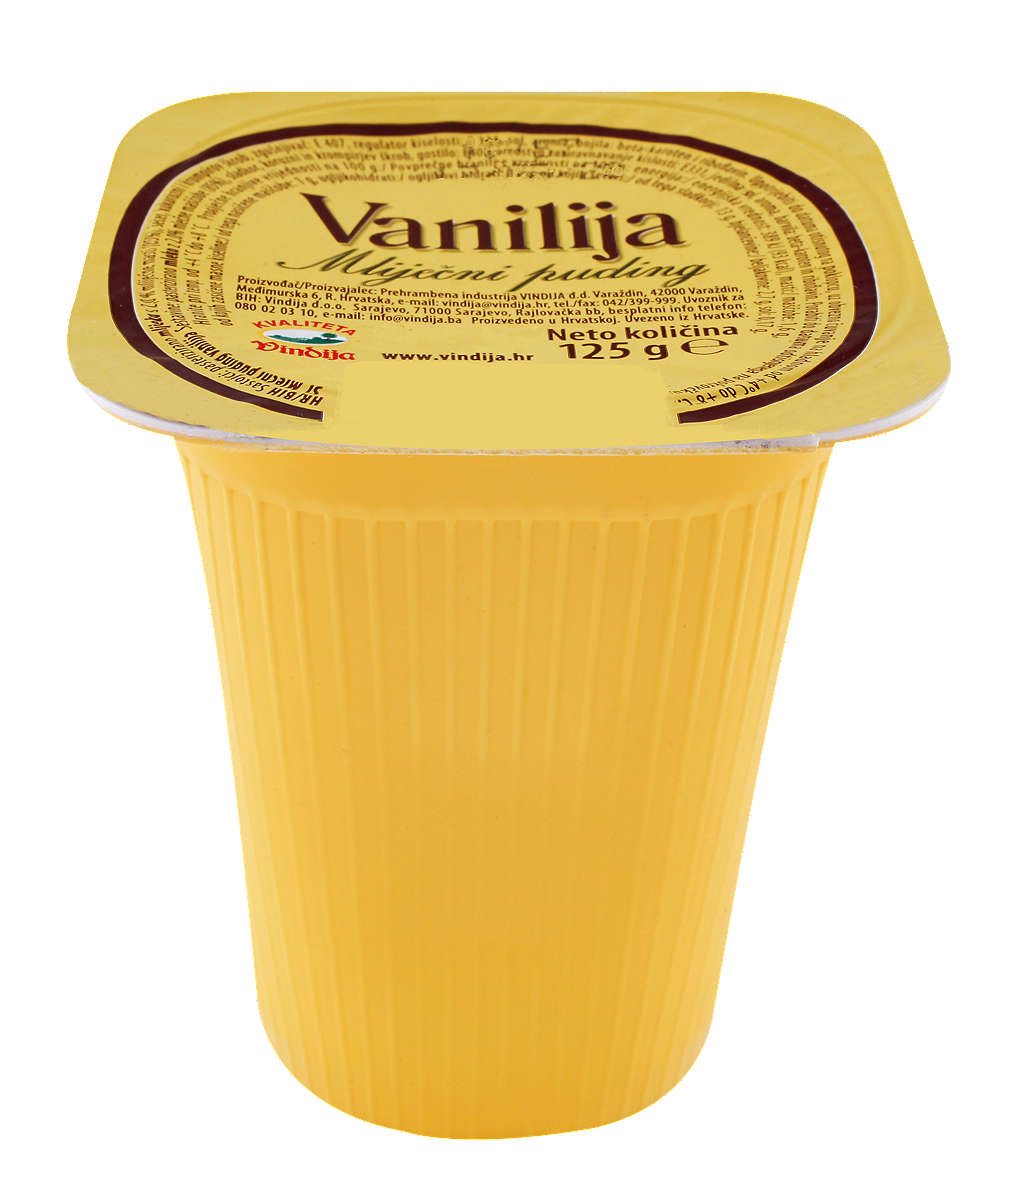 Fotografija ponude Vindija mliječni puding vanilija ili čokolada